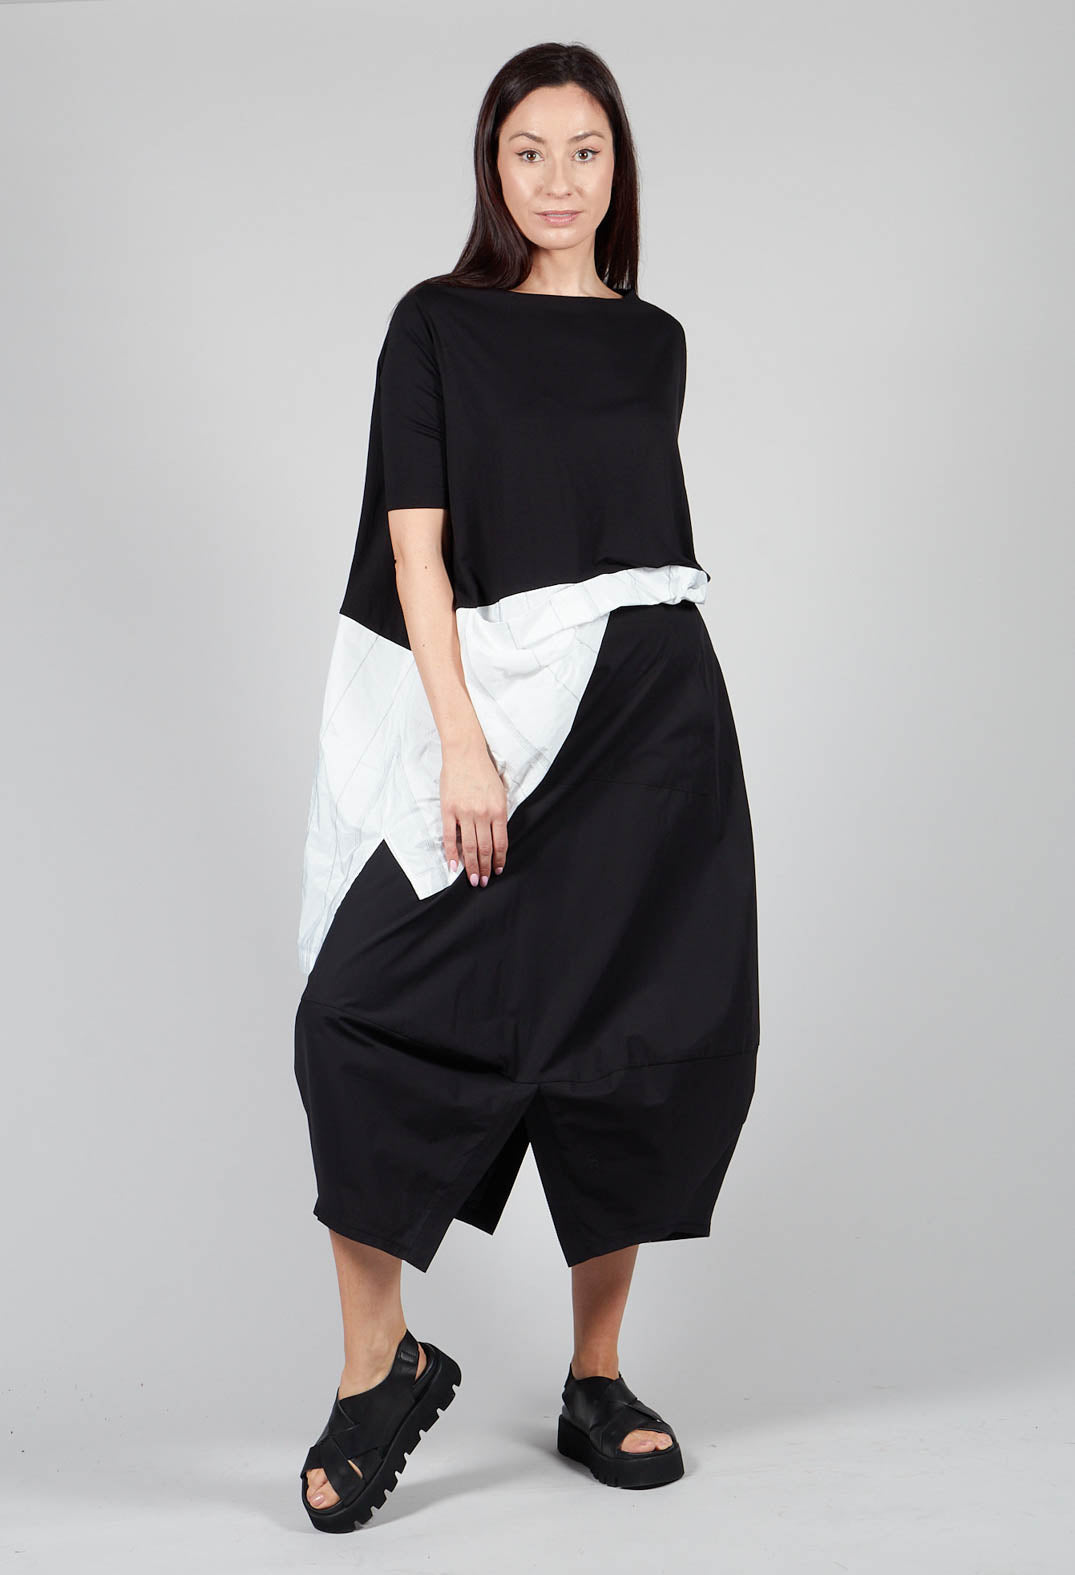 VRTI2 Skirt in Black